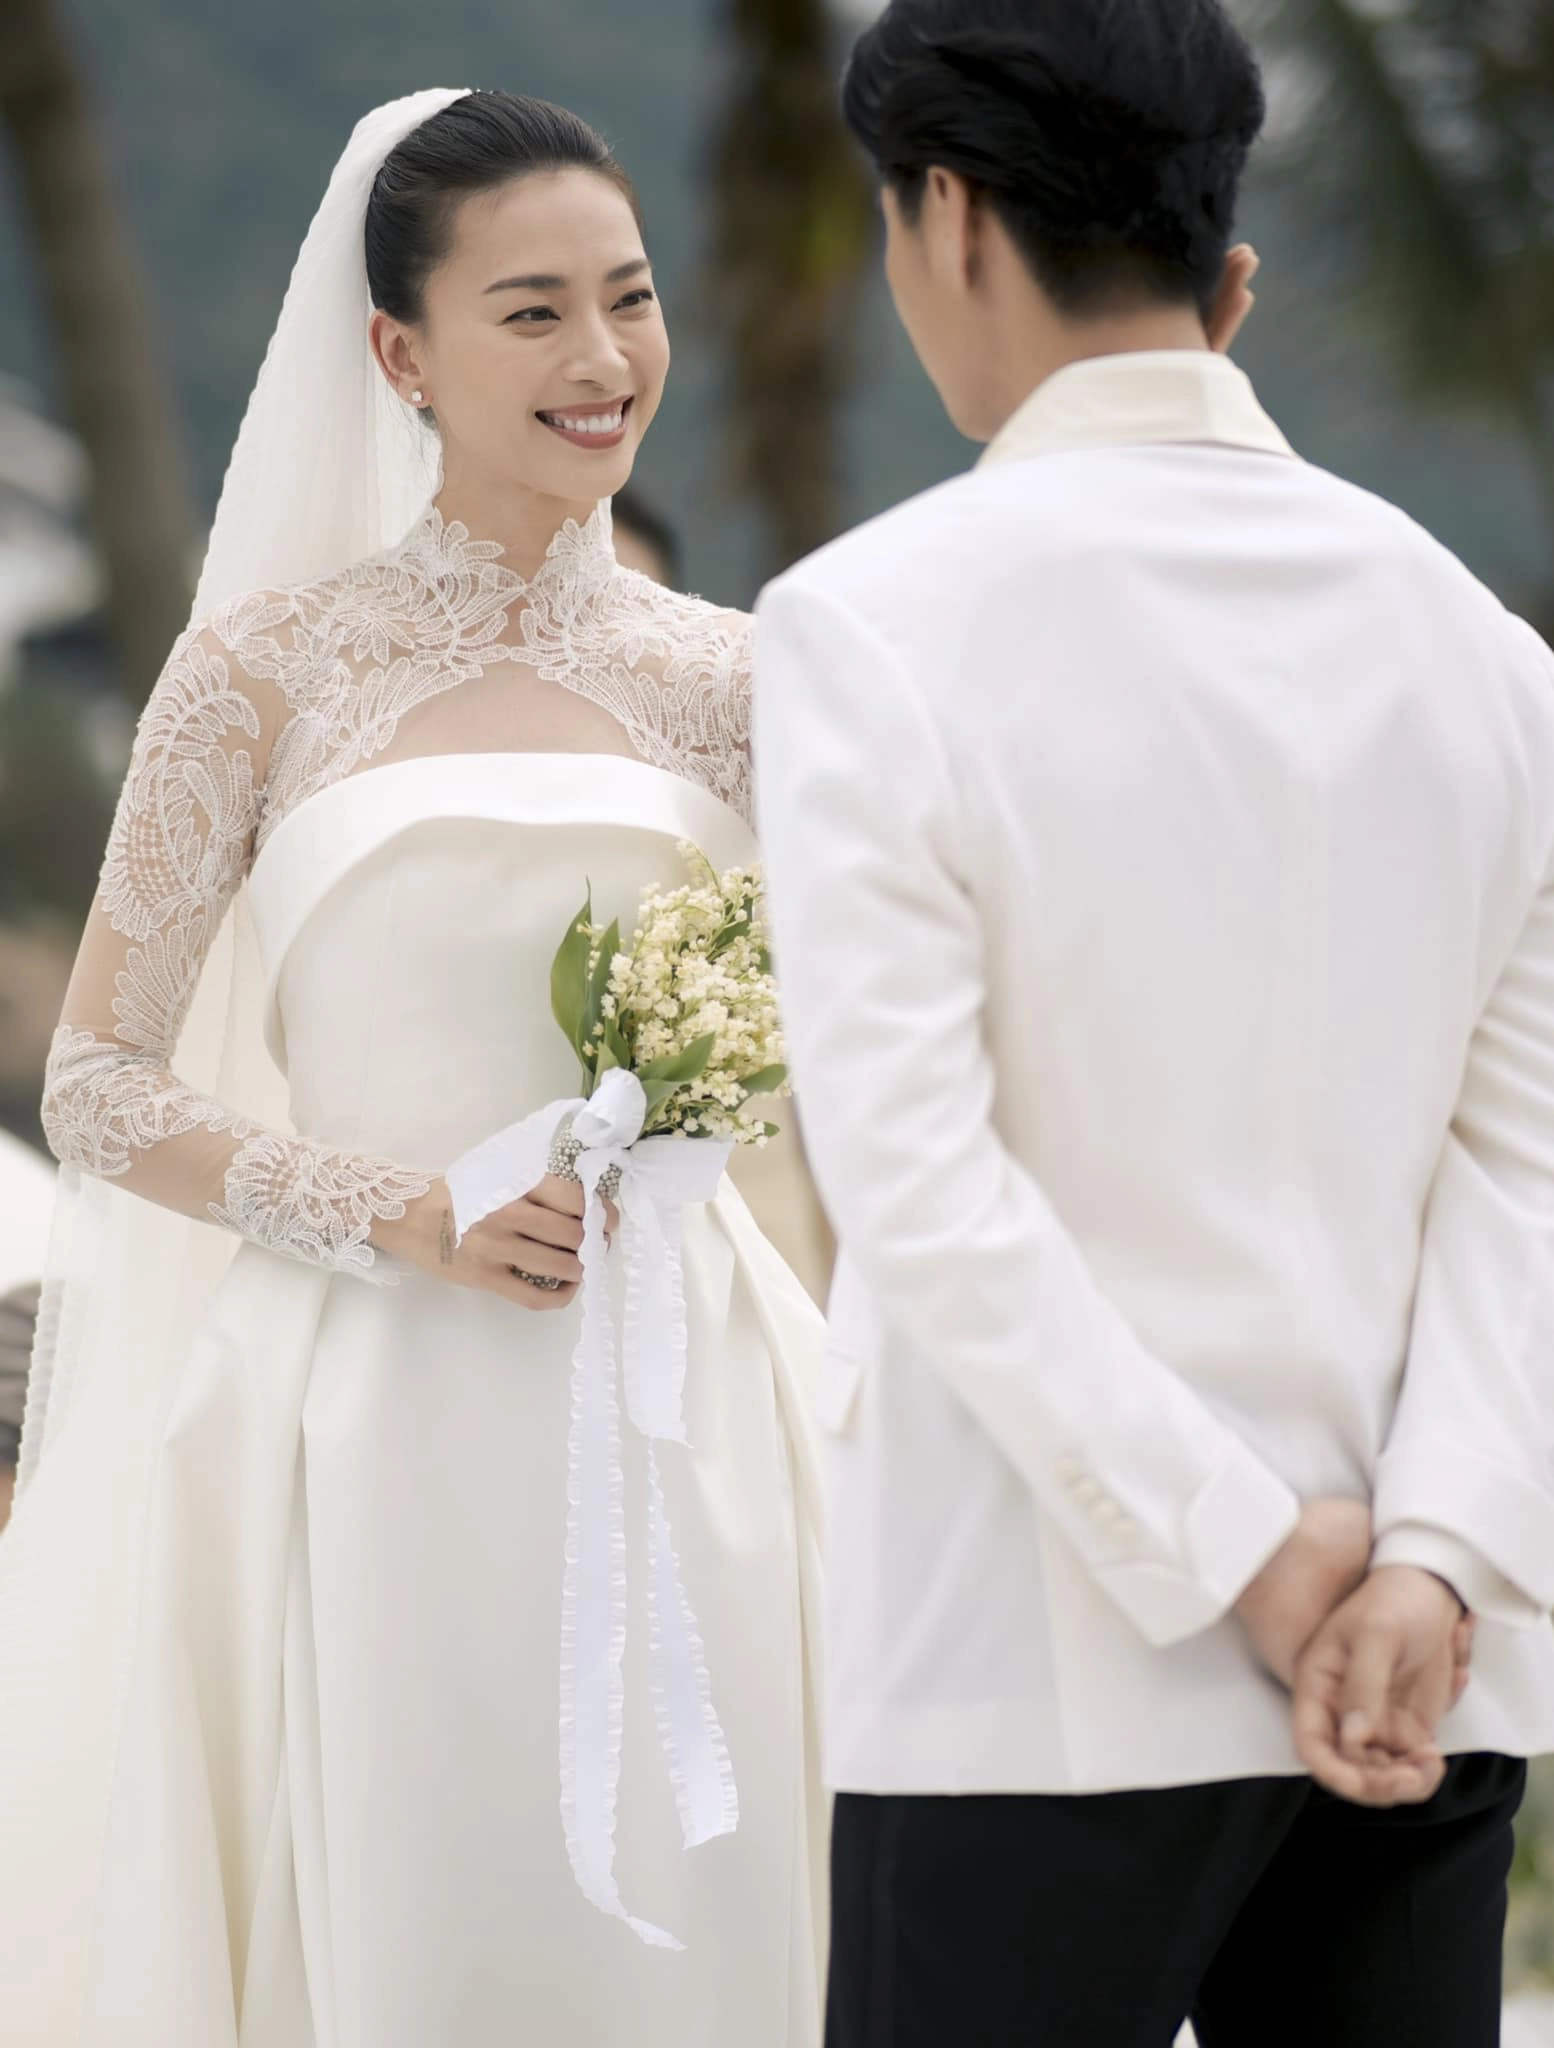 4 sao Việt chốt đơn sau khi bắt hoa cưới: Đỗ Mỹ Linh và Ngô Thanh Vân được trao lại, 1 mỹ nhân vừa nhập hội - Ảnh 5.